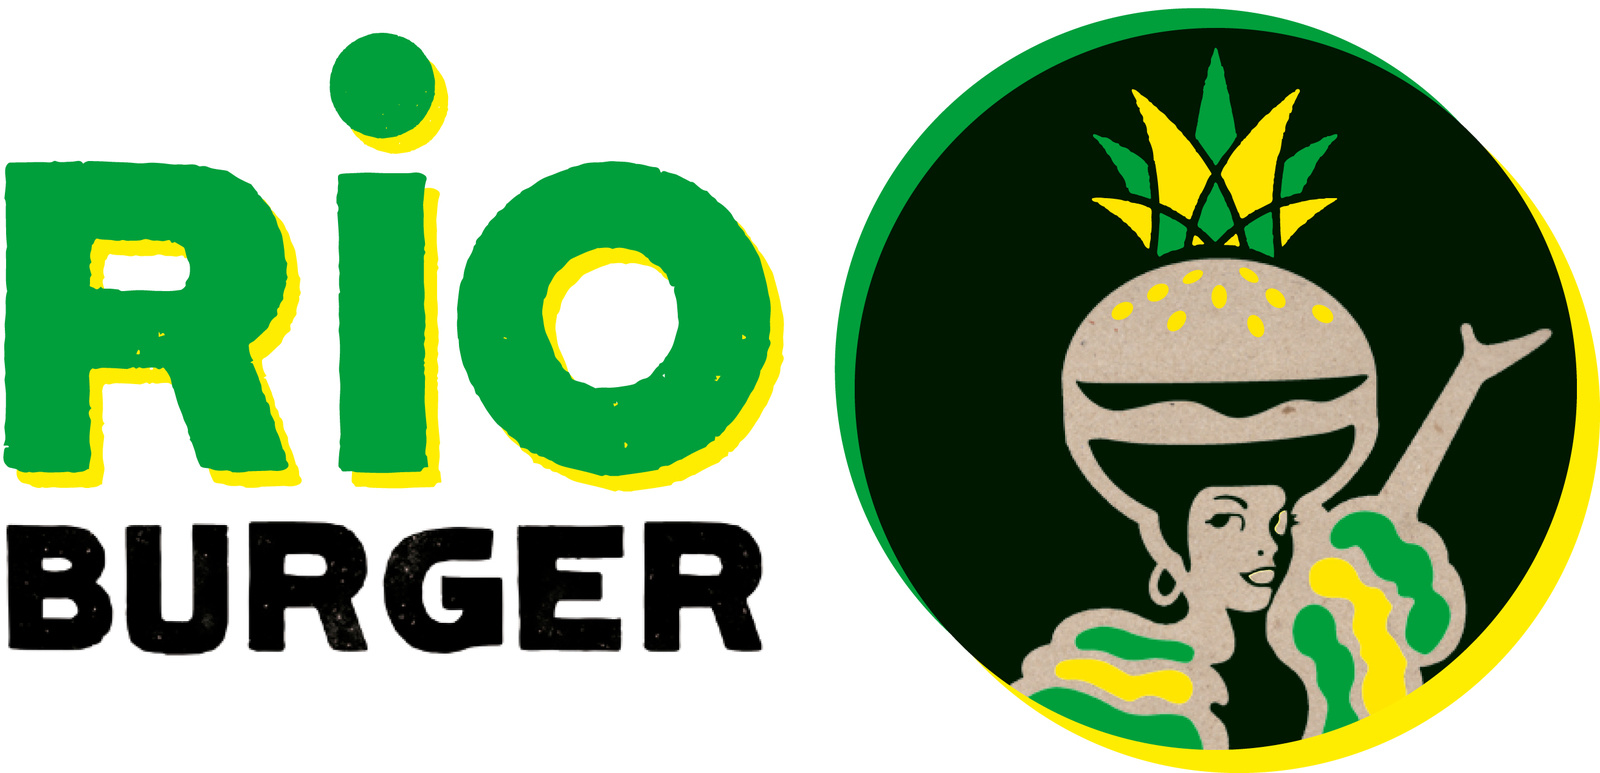 La coupe du monde s'invite chez Frogburger : j'ai testé et approuvé le Rio burger